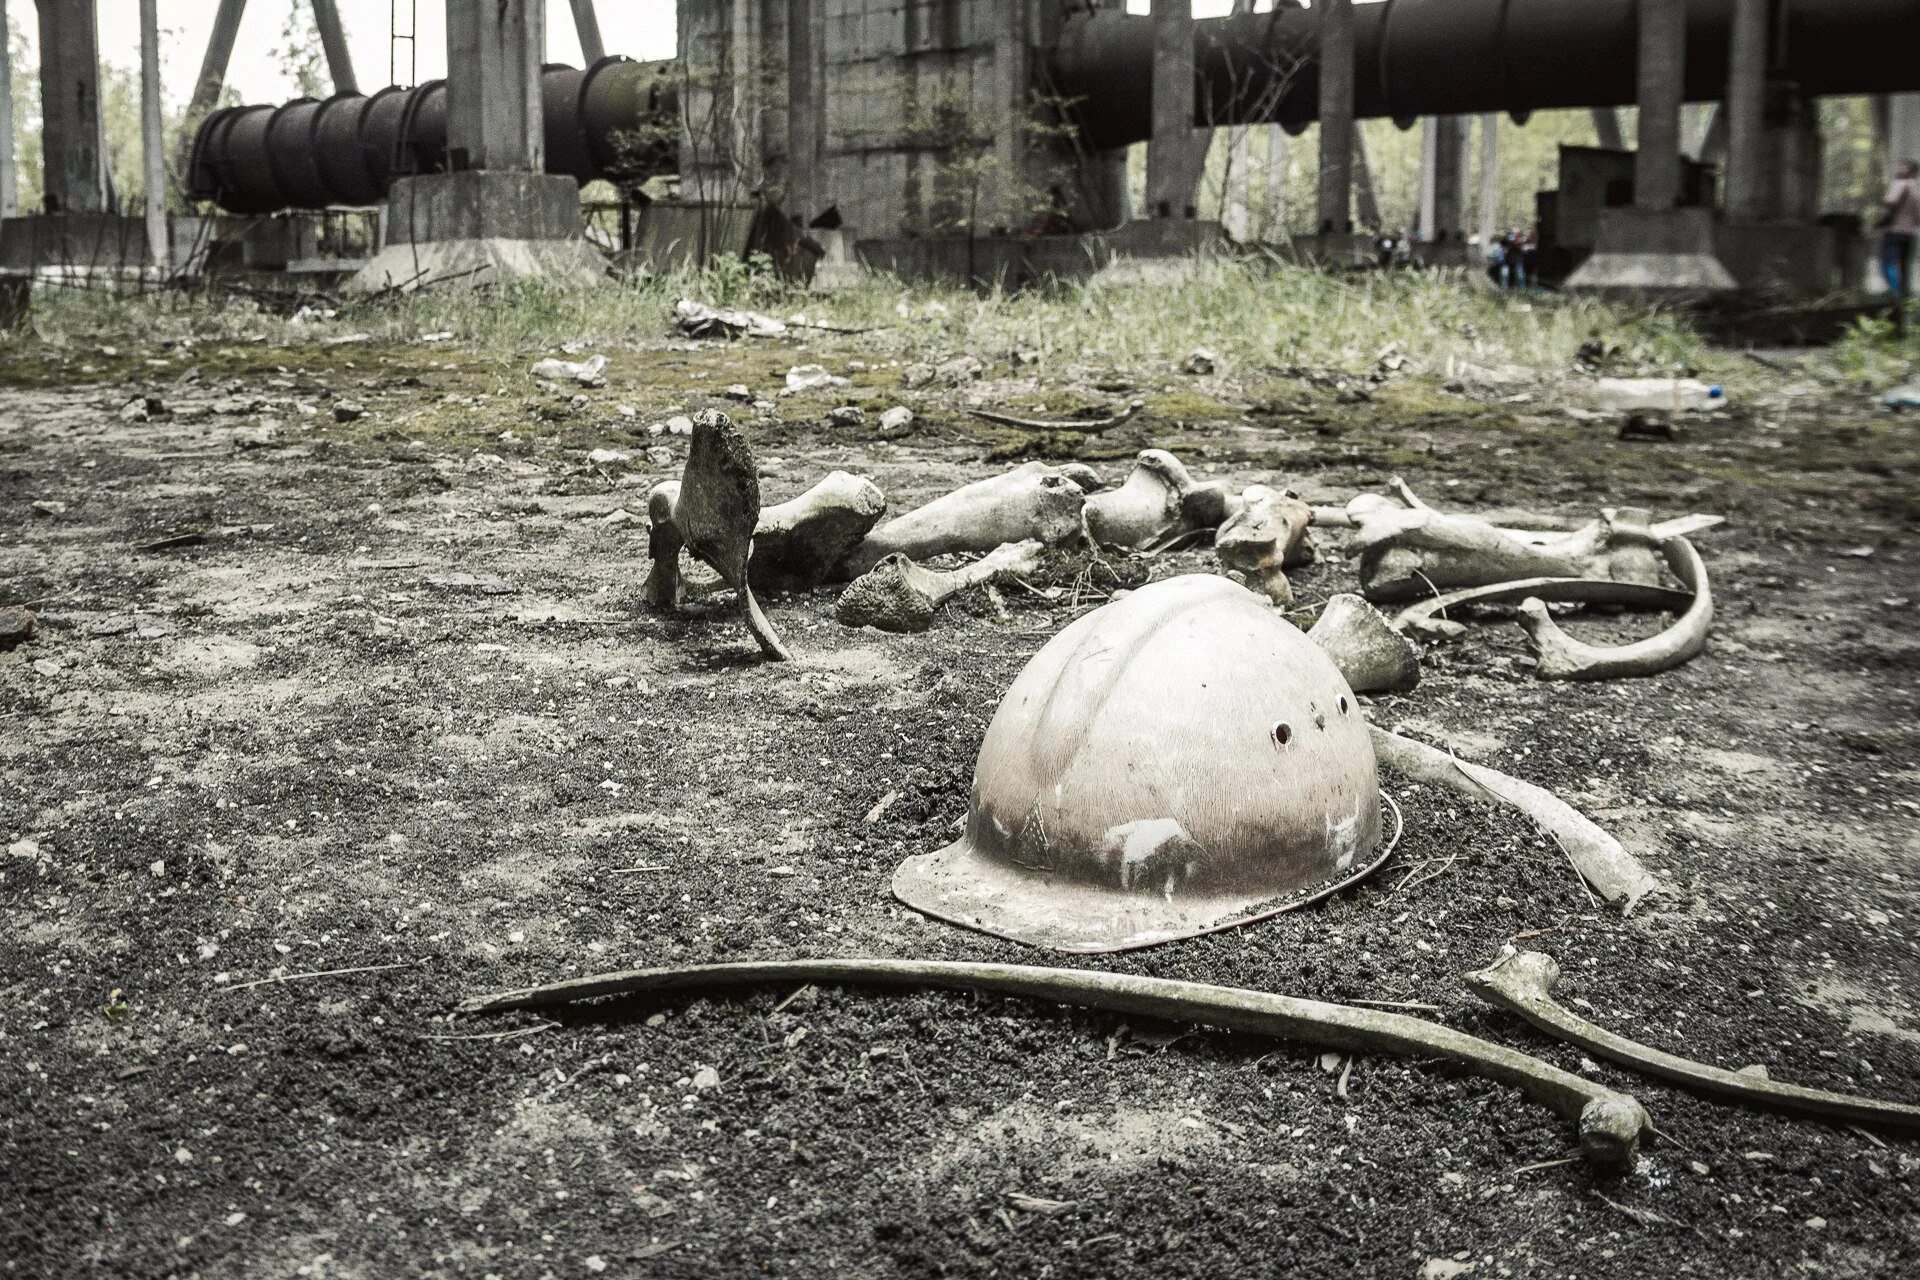 Chernobyl disaster. Чернобыль взрыв. Припять авария на Чернобыльской АЭС. Чернобыль катастрофа. Чернобыль реактор.